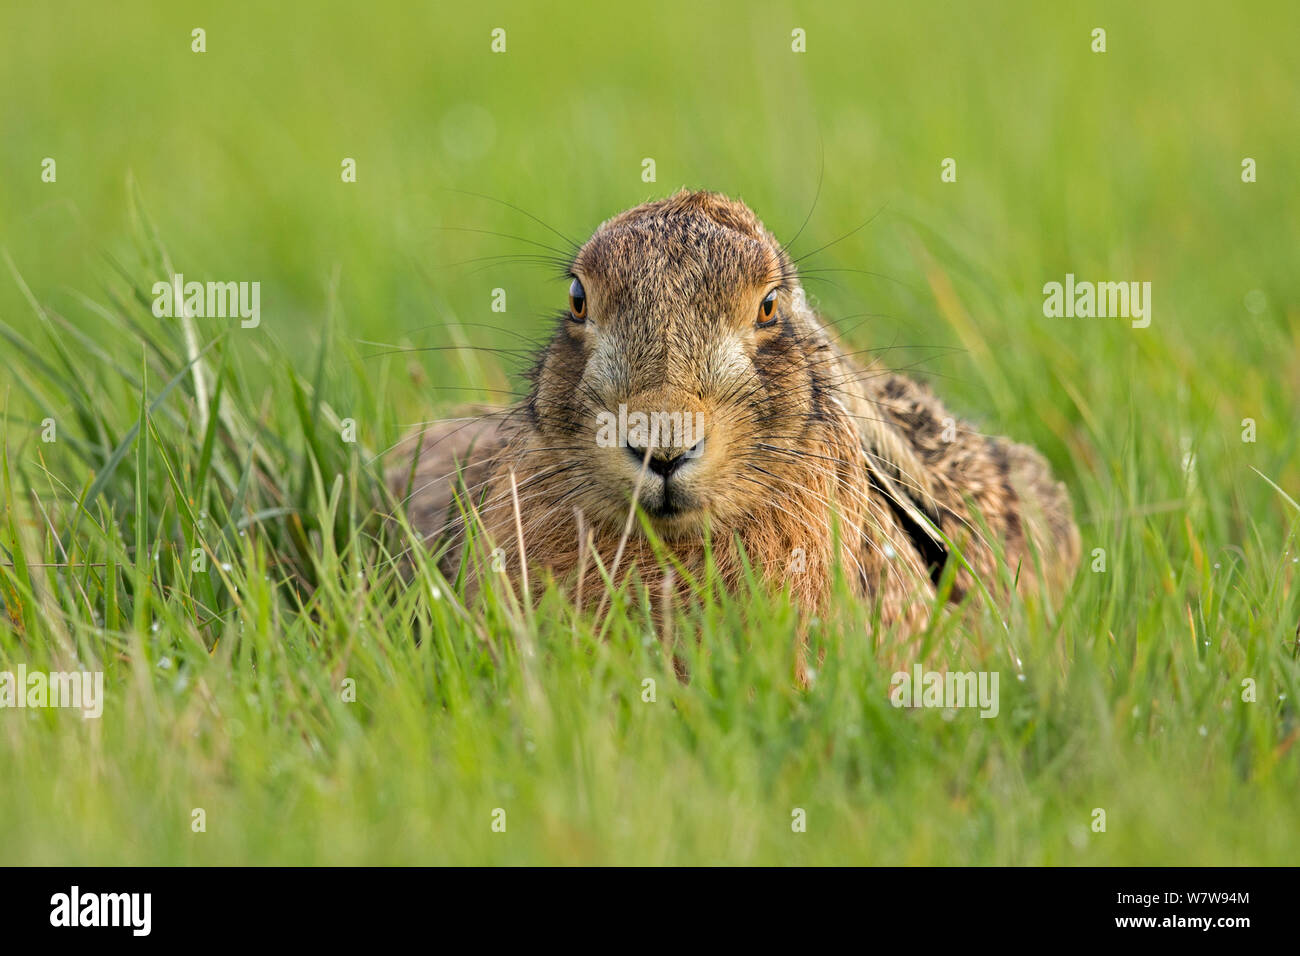 Europäische Hare (Lepus europaeus) im Grünland, Großbritannien Stockfoto